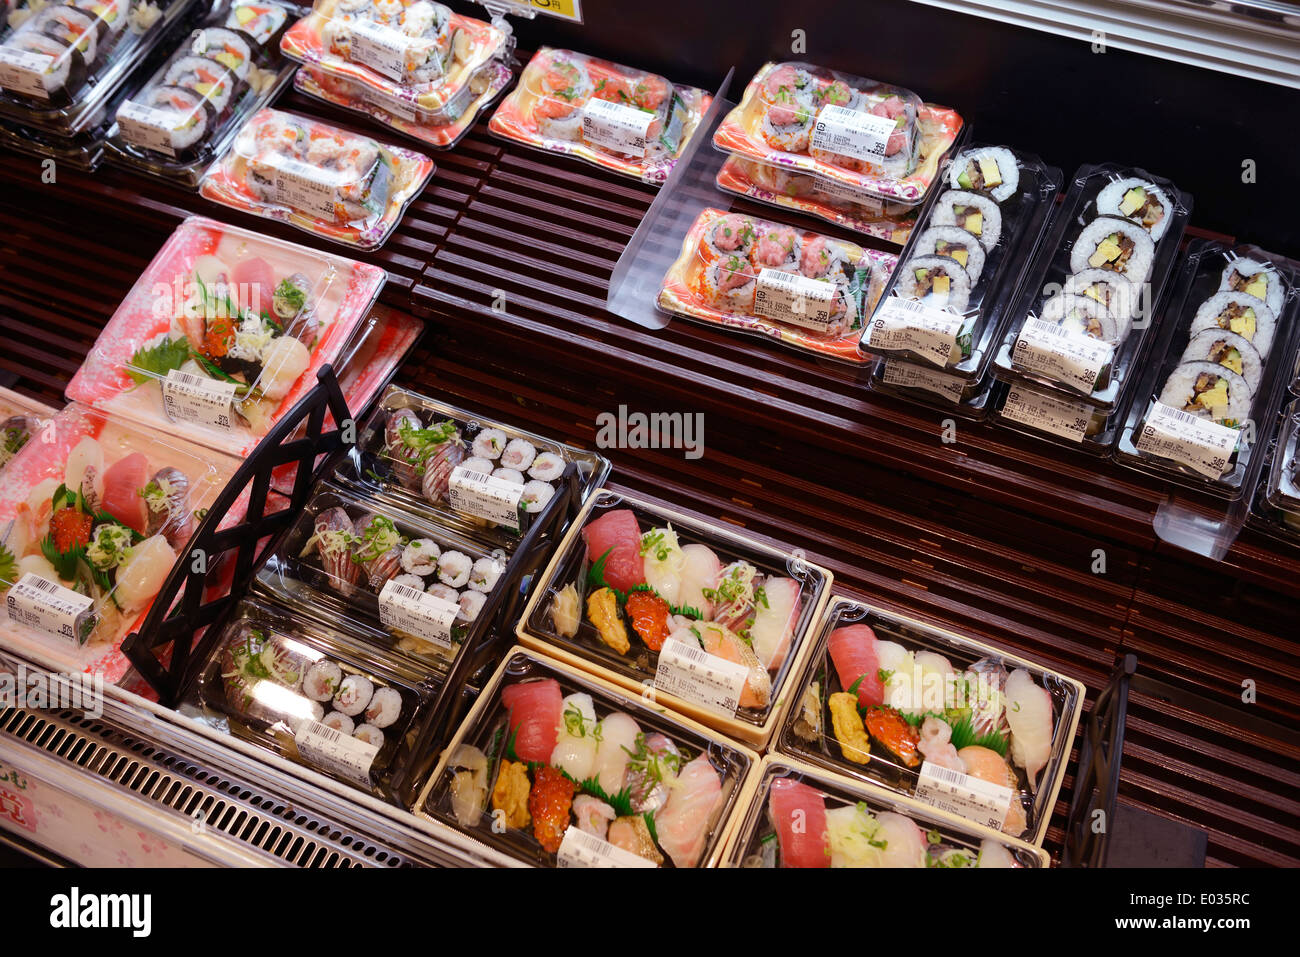 Verpackten Sushi Rollen, zubereitete Speisen auf dem Display in einem japanischen Supermarkt. Tokio, Japan. Stockfoto